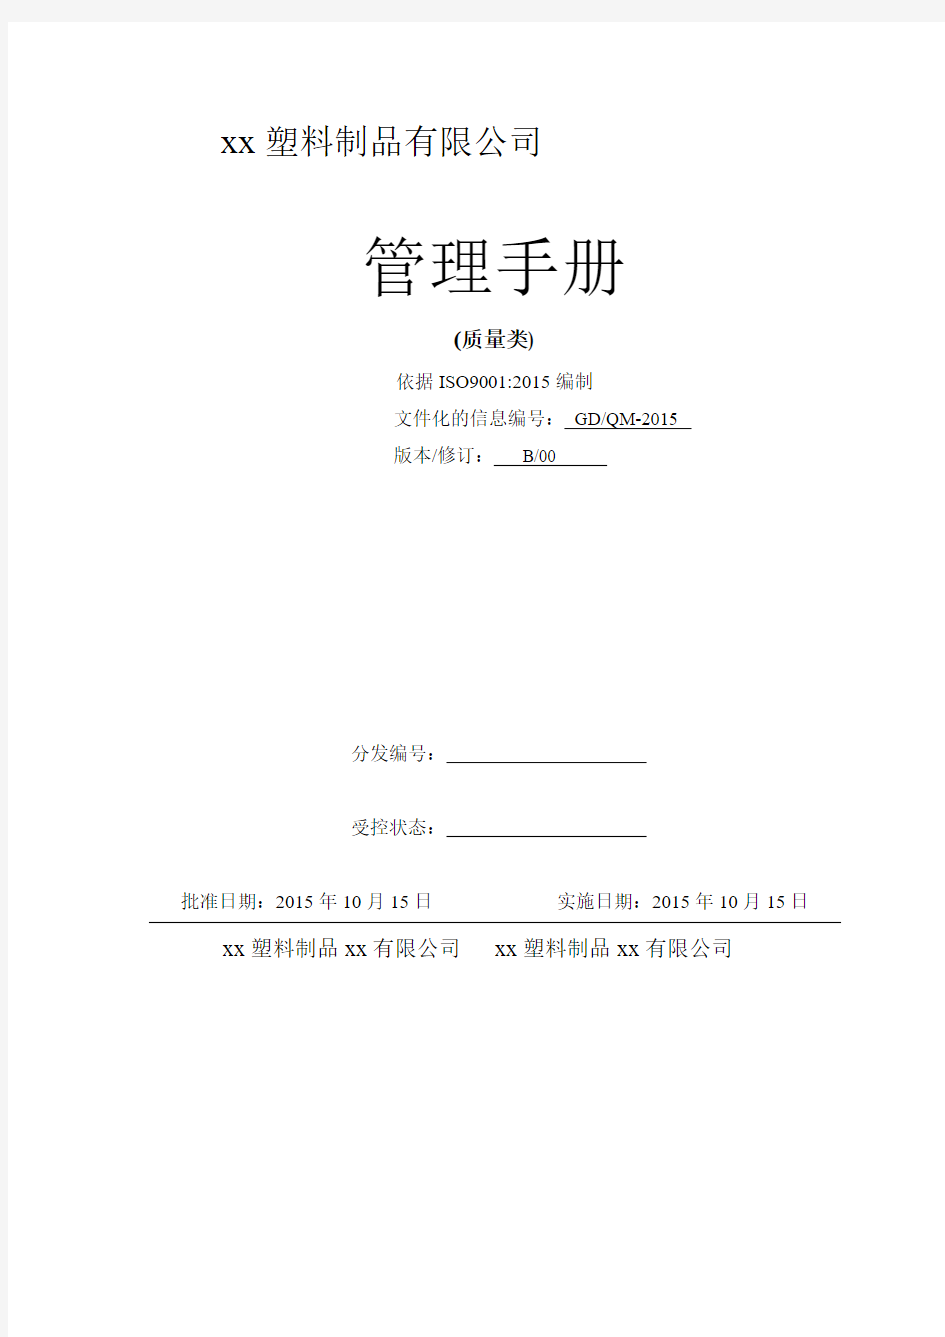 手册_xx塑料制品上海有限公司质量类管理手册